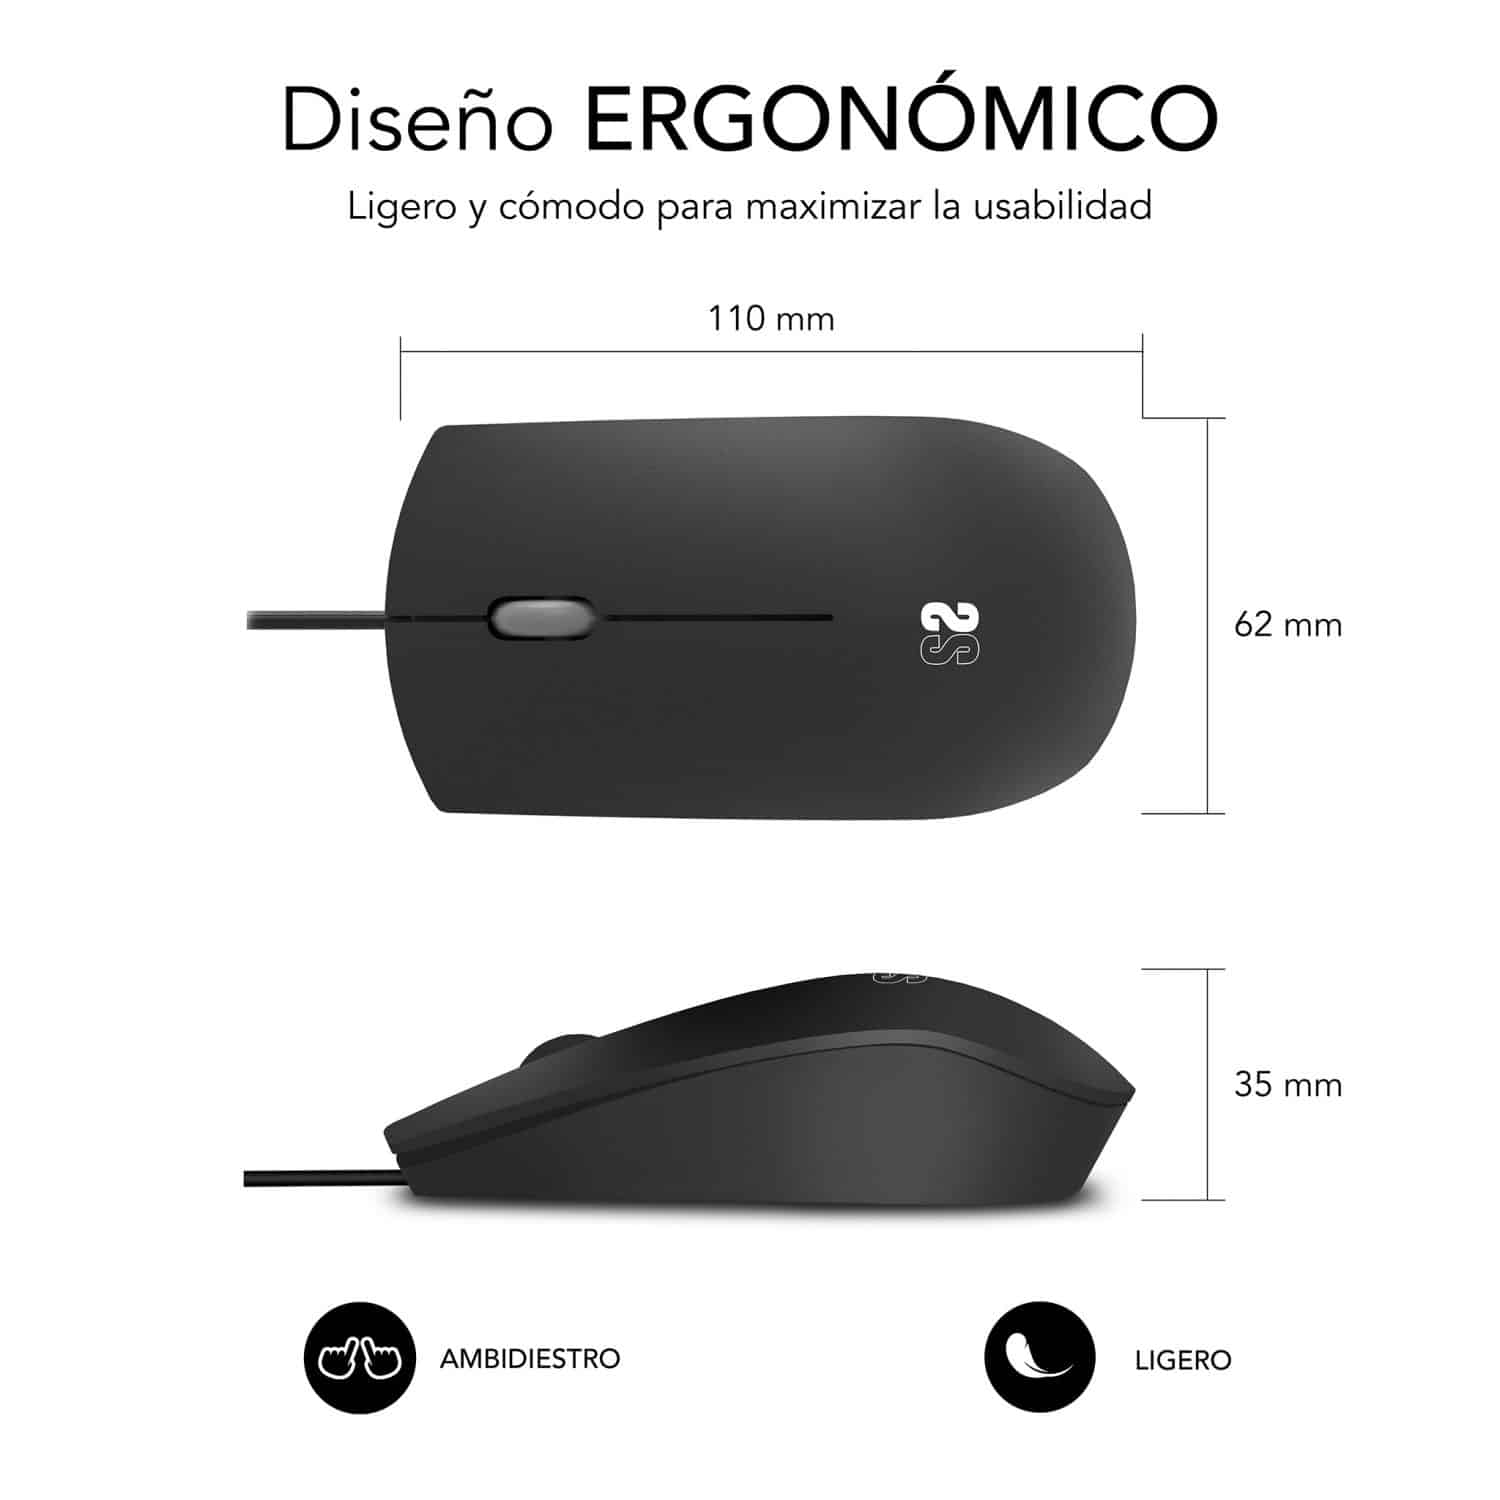 mouse com design ergonômico que cabe na mão, ambidestro, gama empresarial, ideal para empresas na cor preta